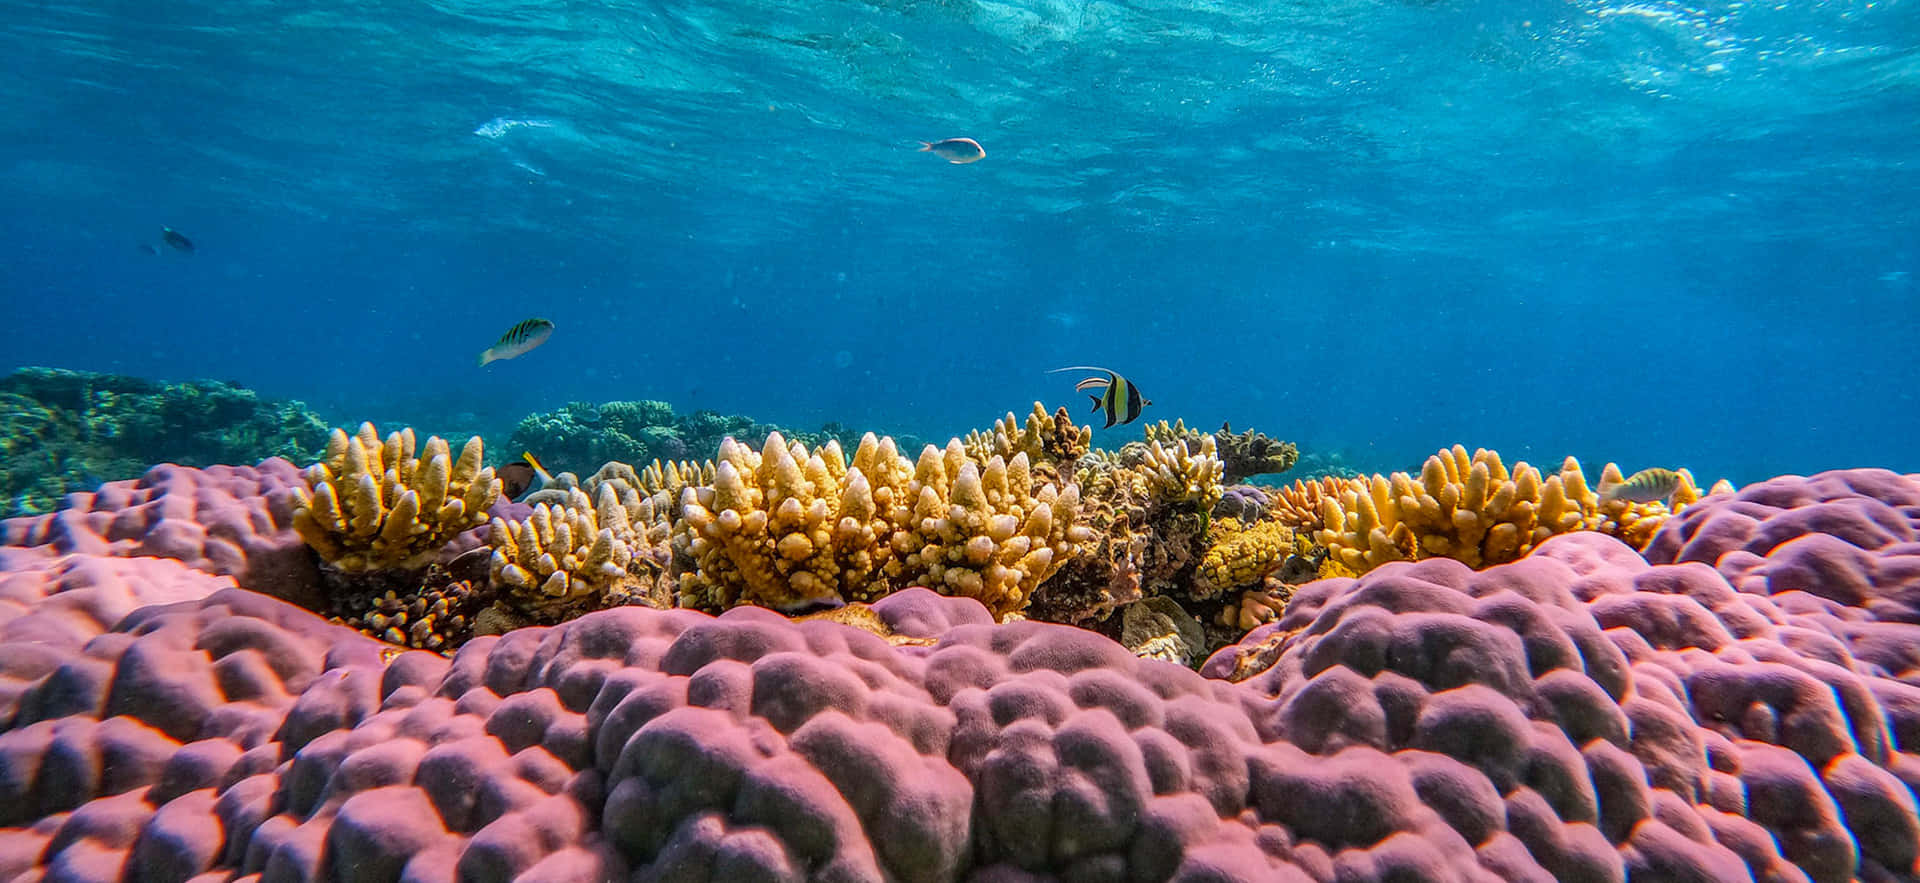 Imagende Arrecife De Coral Con Plantas Marinas De Color Púrpura.